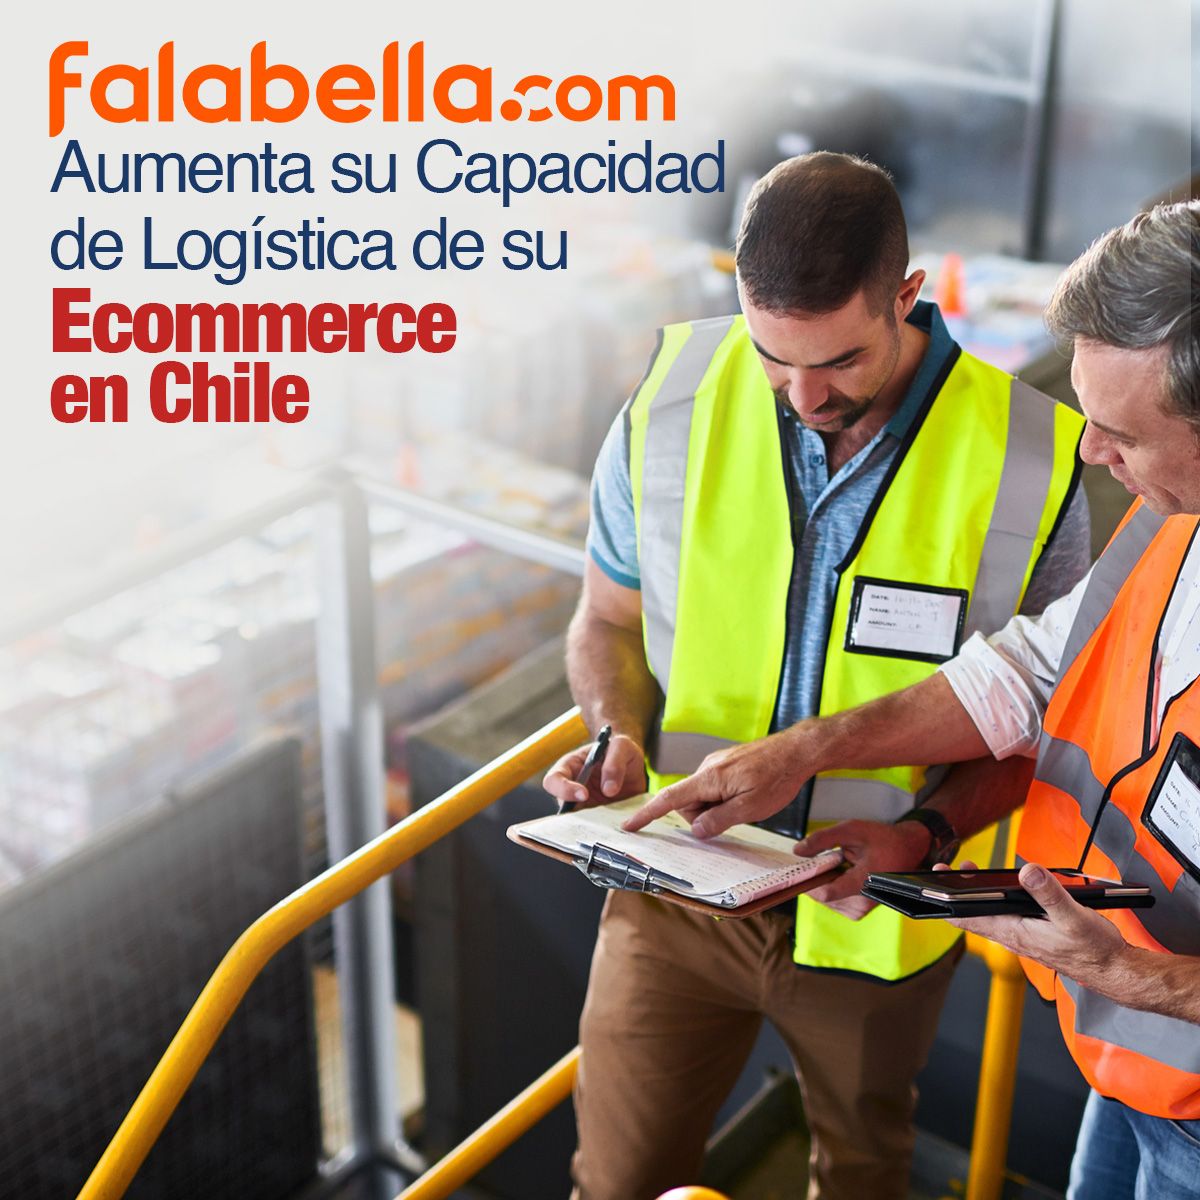 Falabella Aumenta su Capacidad de Logística de su Ecommerce en Chile